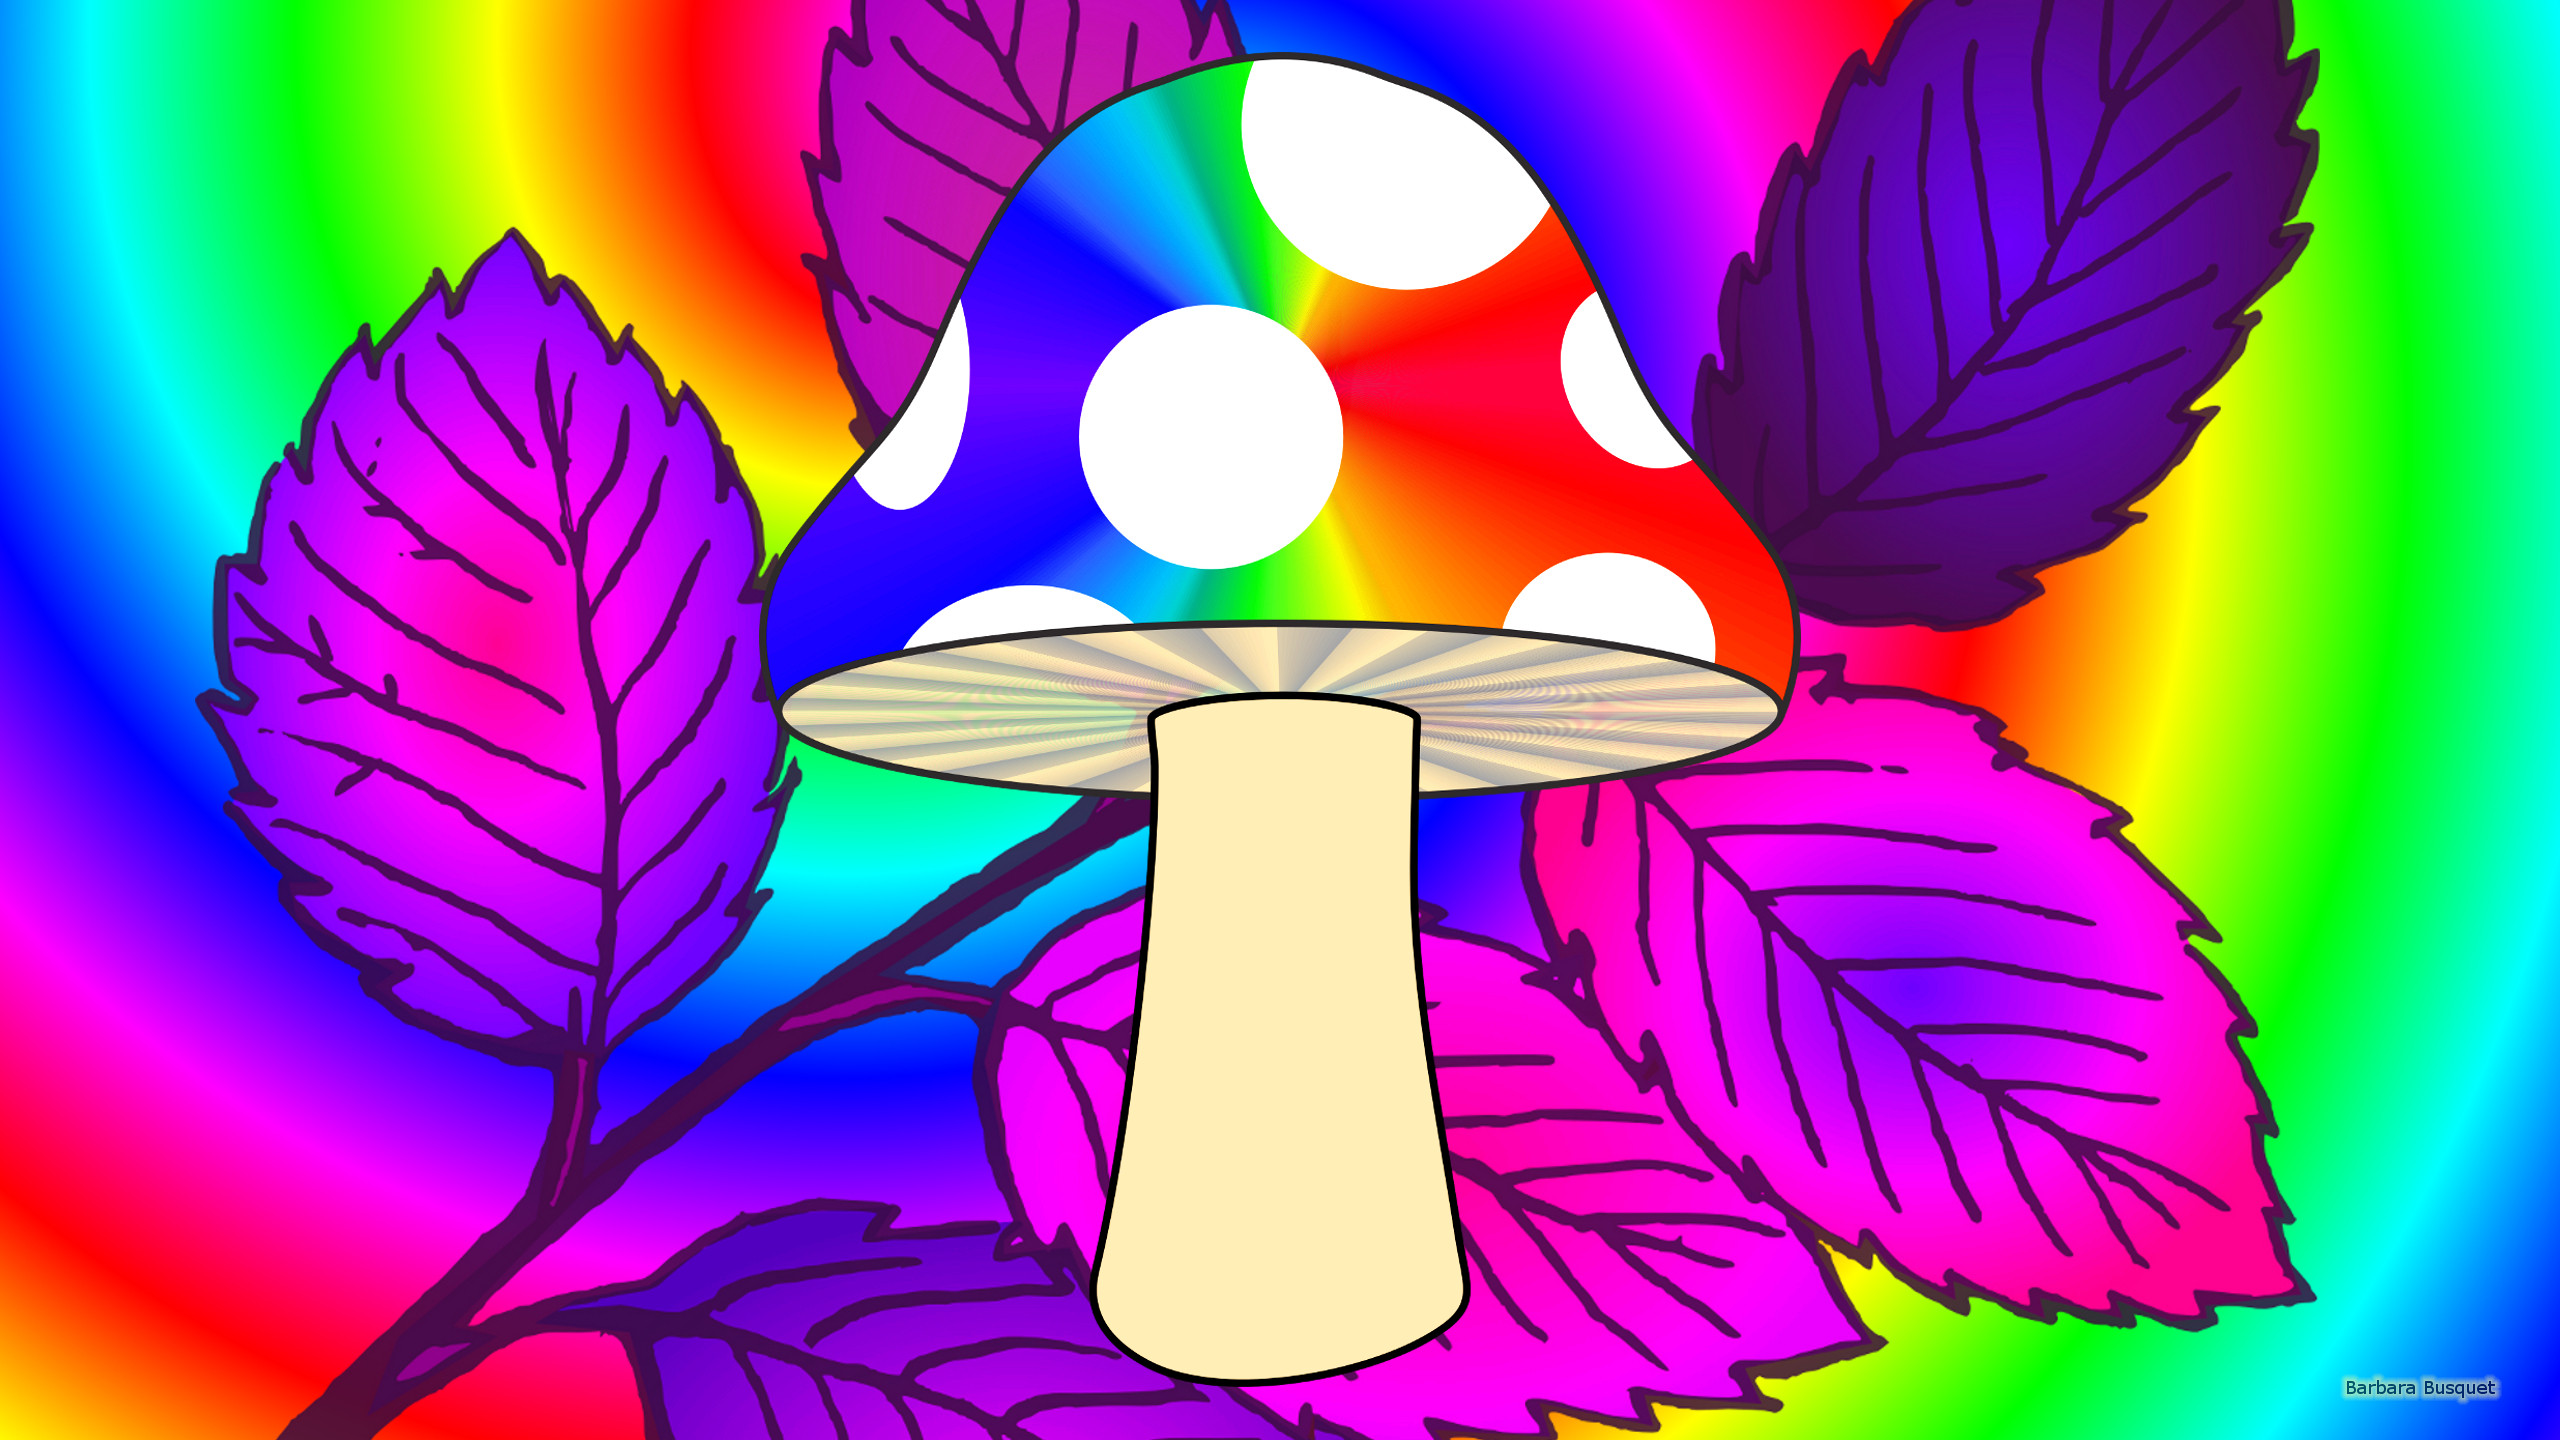 Mushroom in autumn's HD Wallpaper